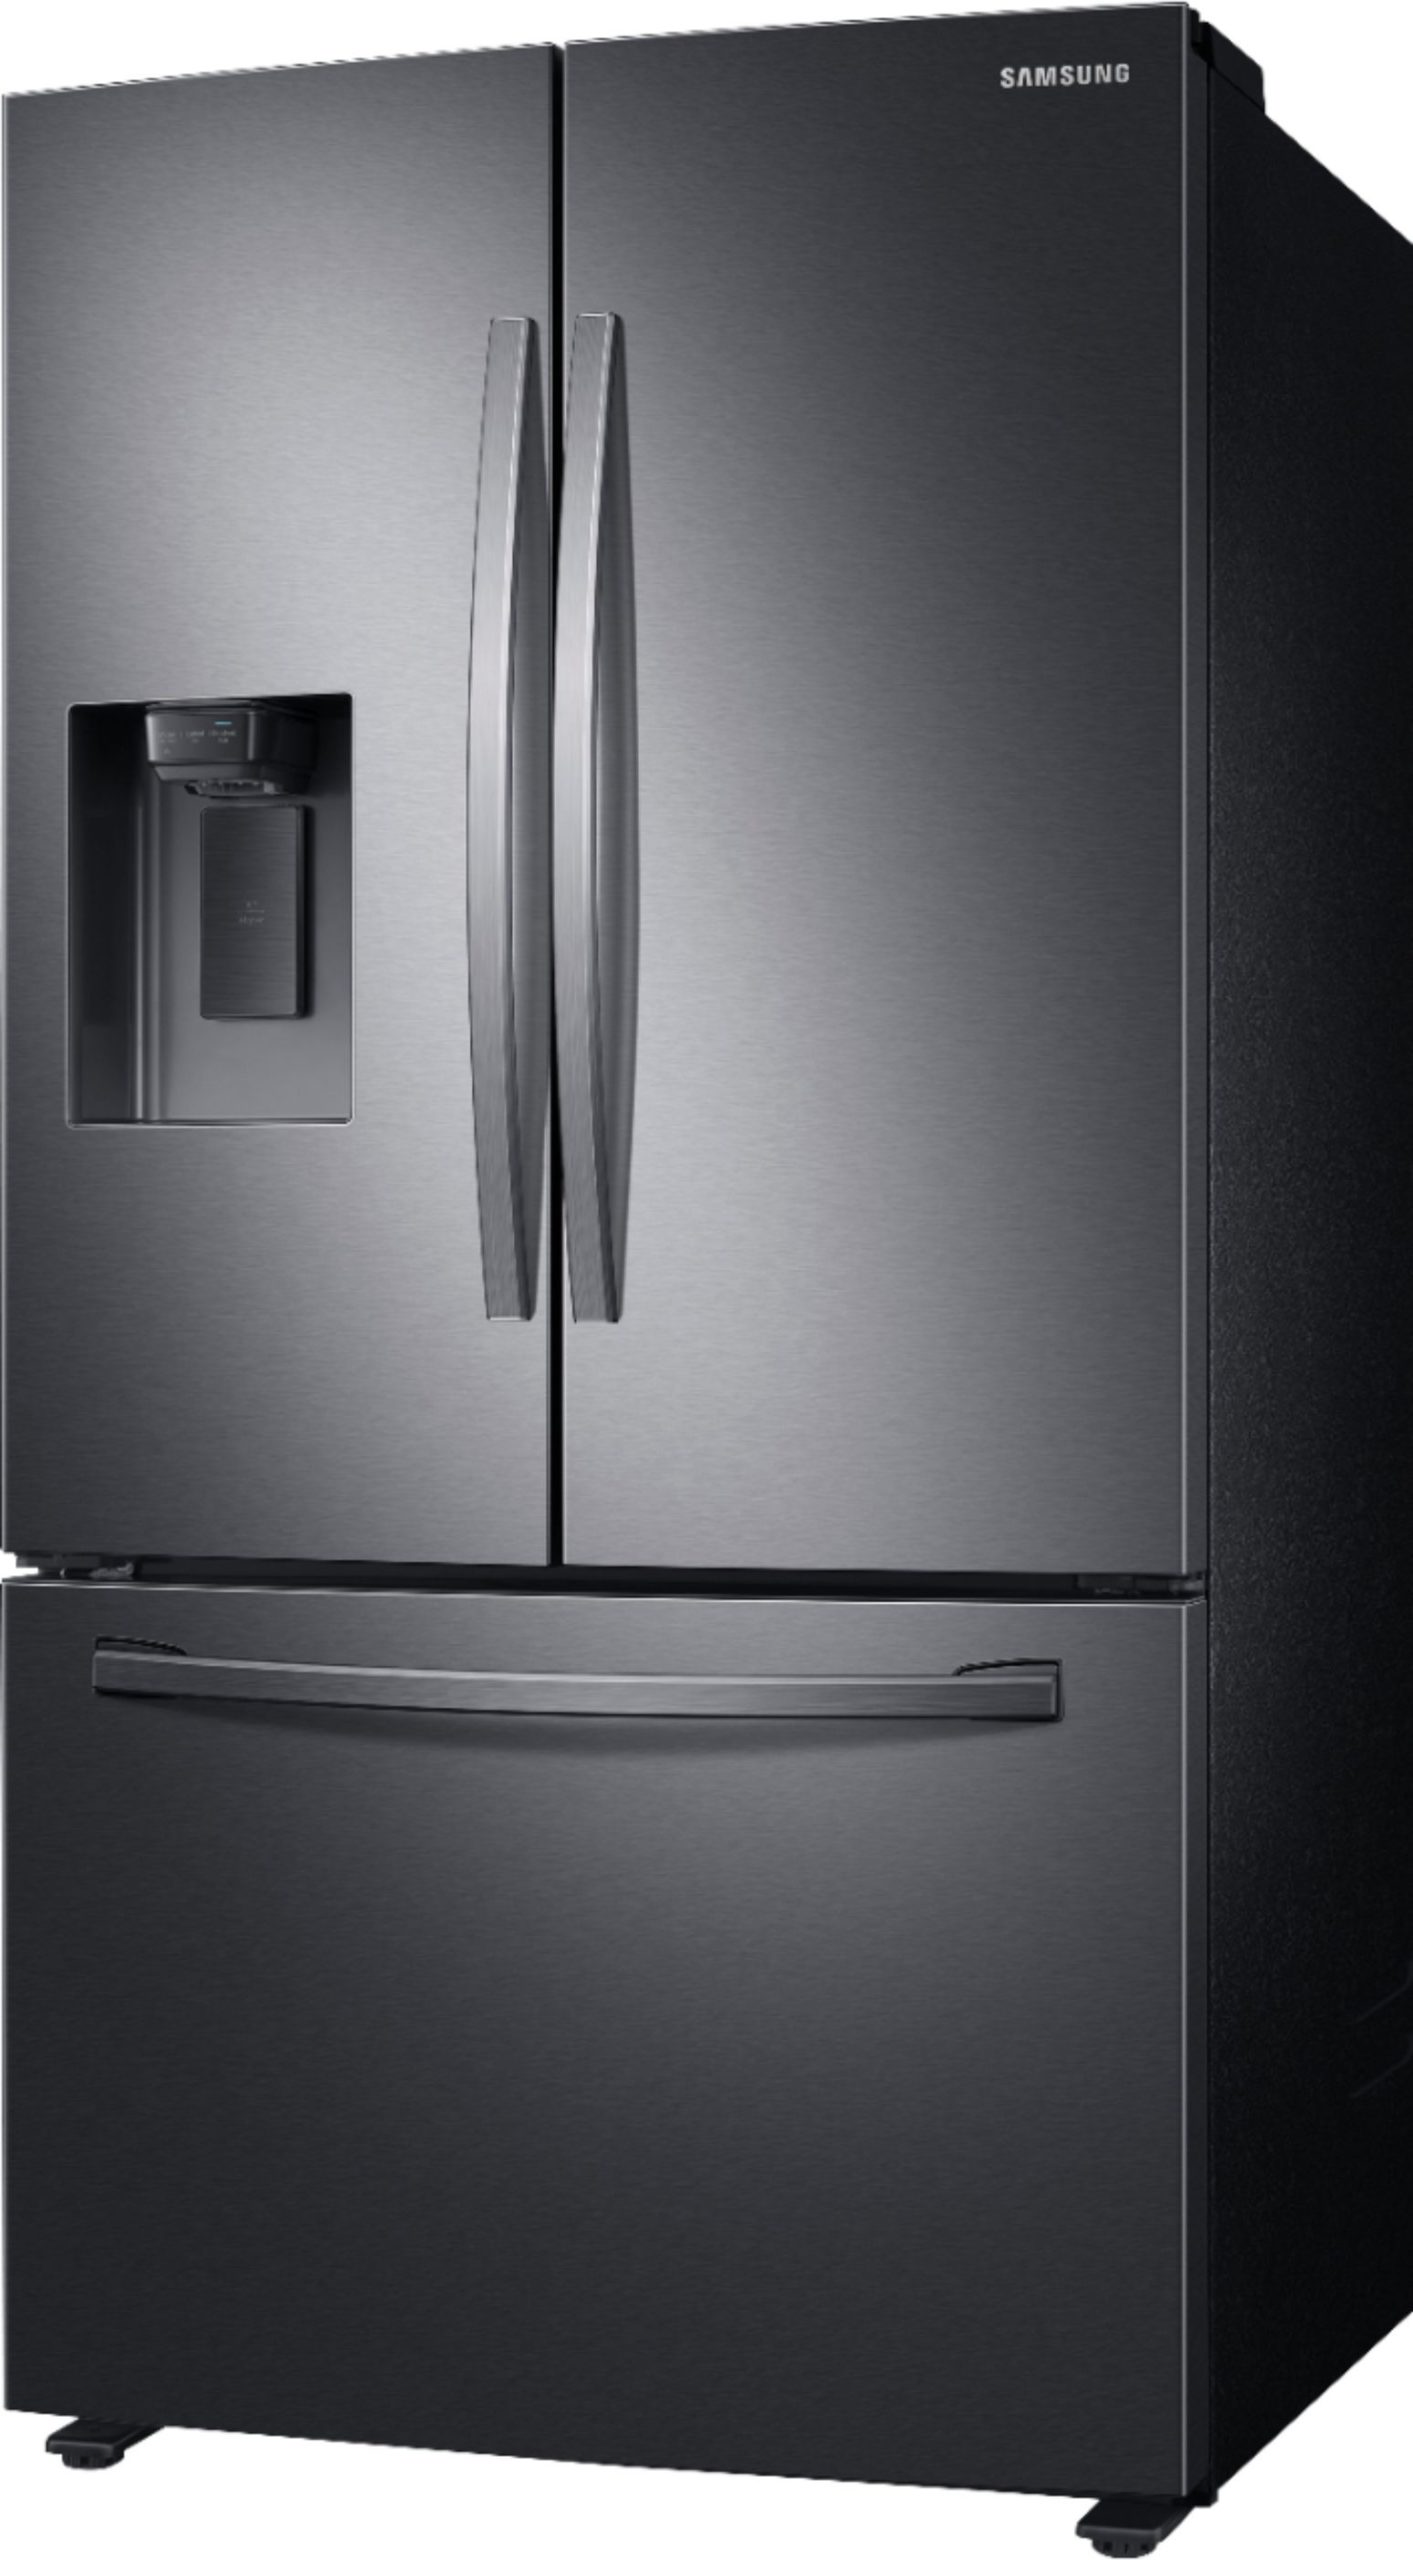 Samsung – 27 cu. ft. Large Capacity 3-Door French Door Refrigerator